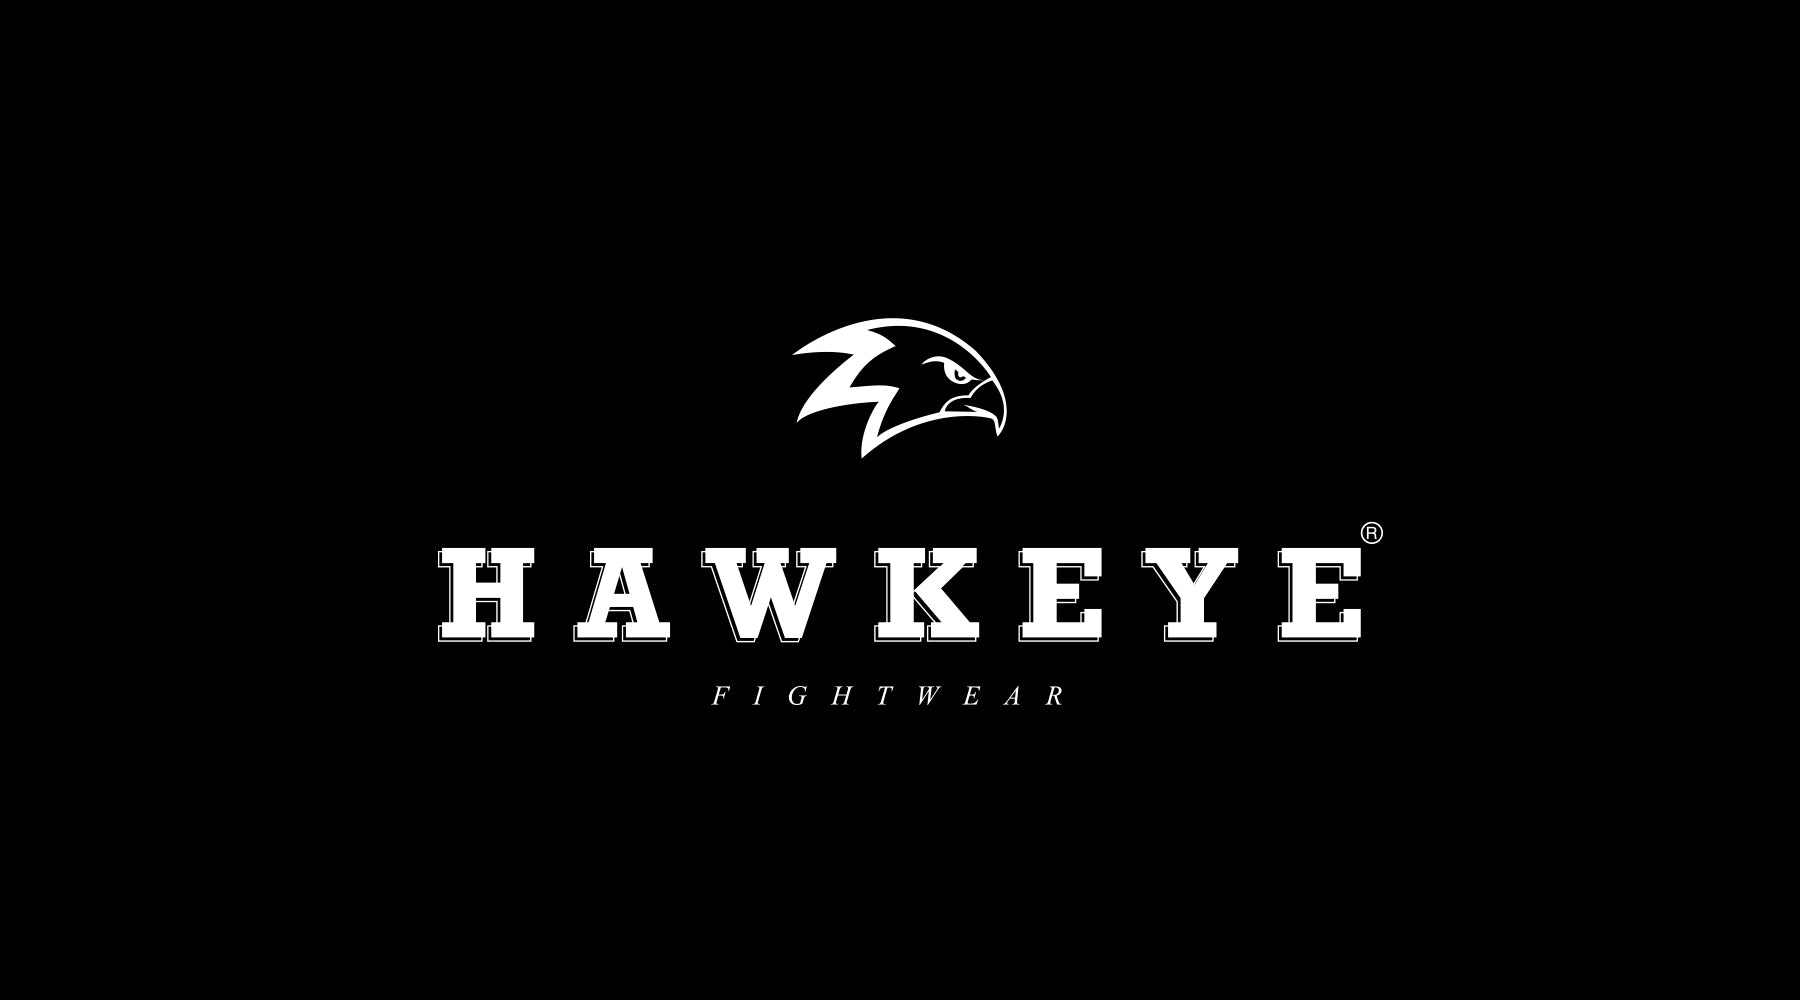 Hawkeye Fightwear 6th Anniversary